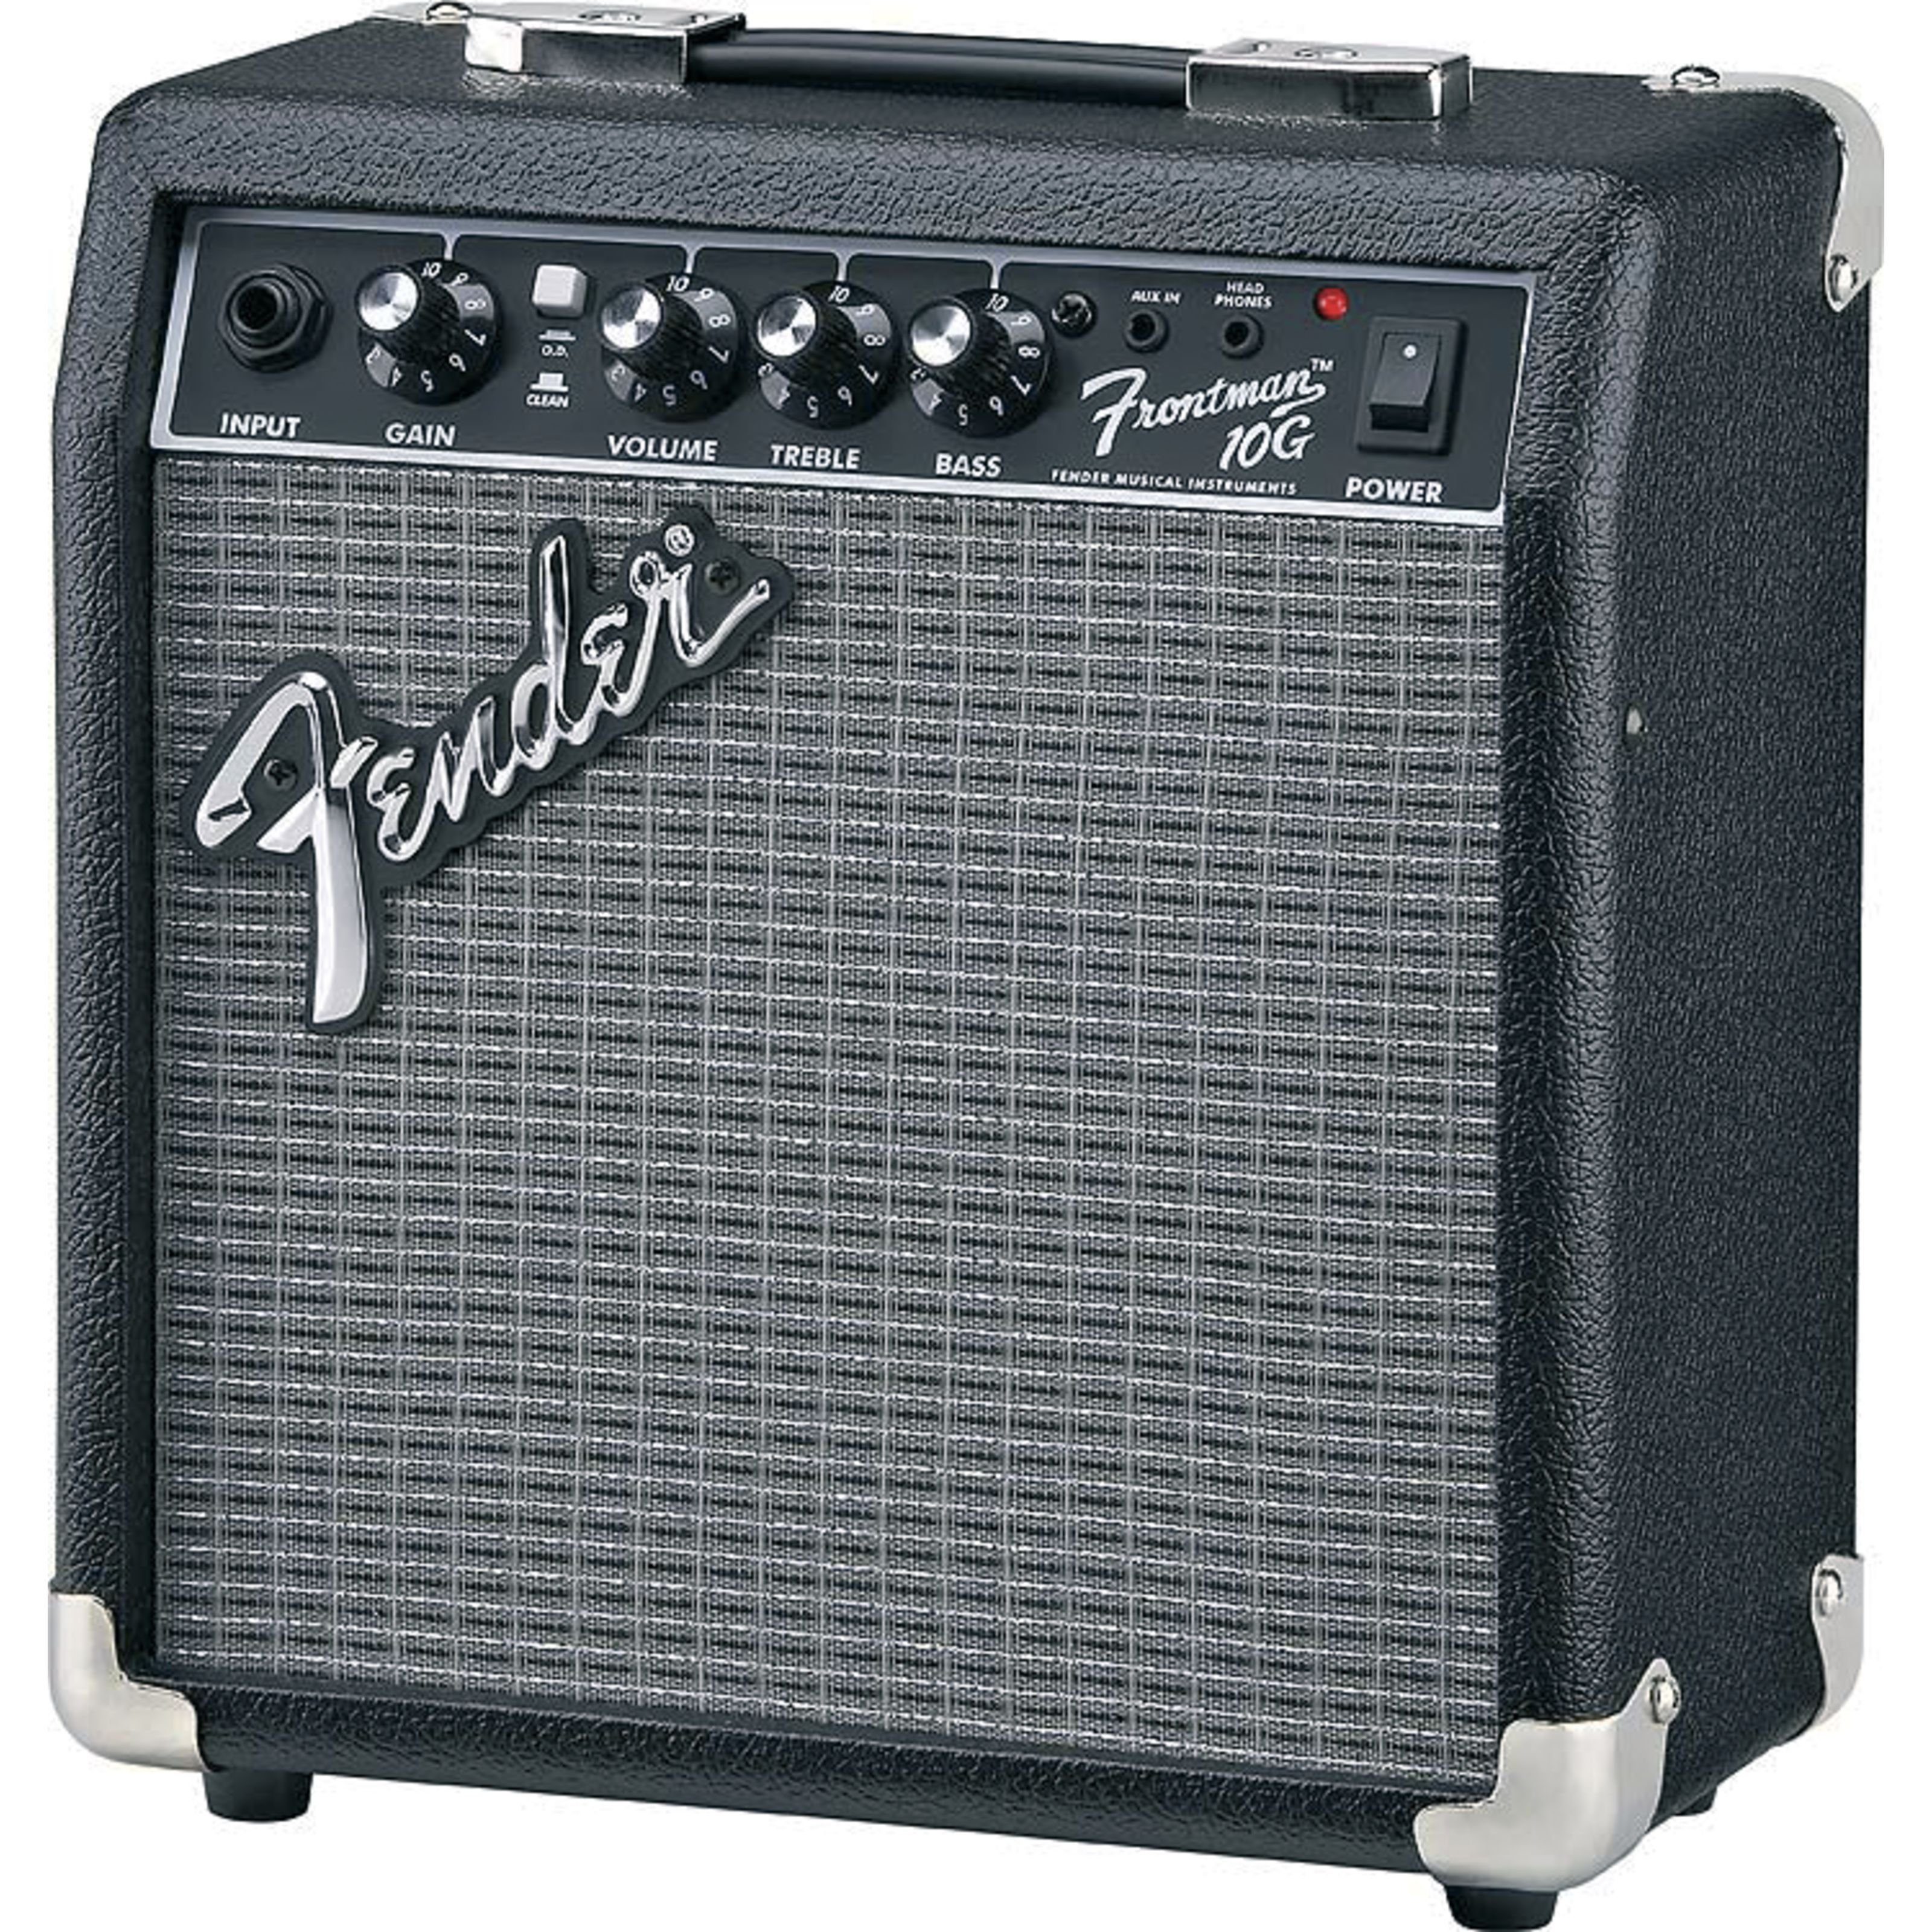 für Combo Verstärker E-Gitarre) - Transistor (Frontman Combo 10G Fender Verstärker